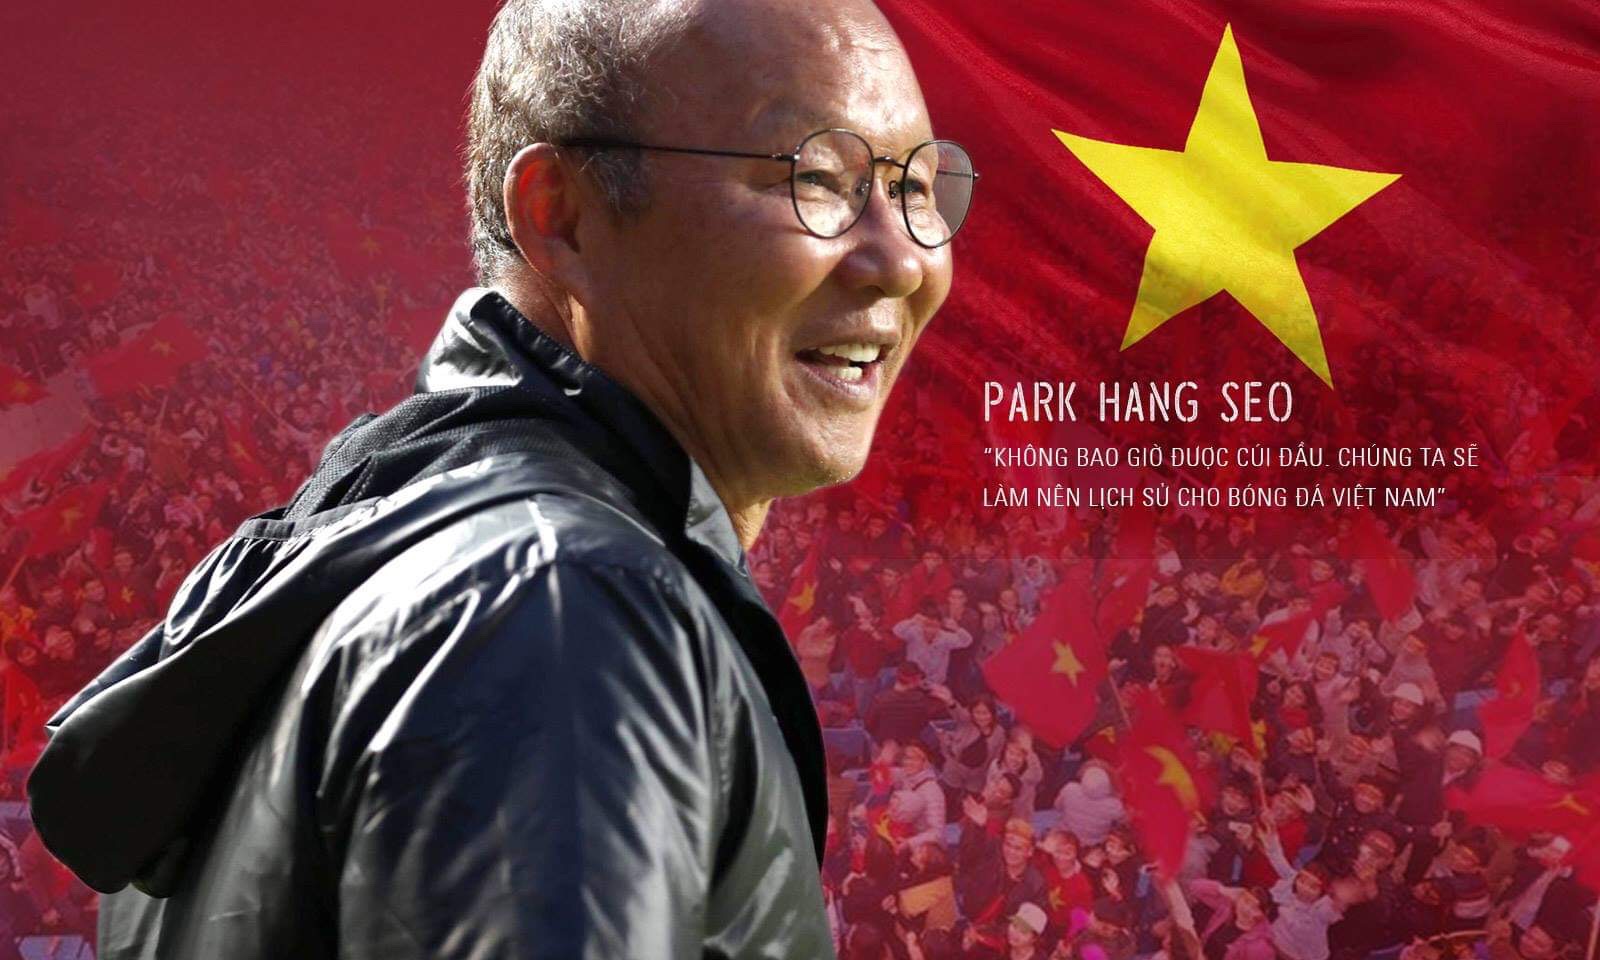 HLV Park Hang-seo: “Không bao giờ được cúi đầu. Chúng ta sẽ làm nên lịch sử cho bóng đá Việt Nam”